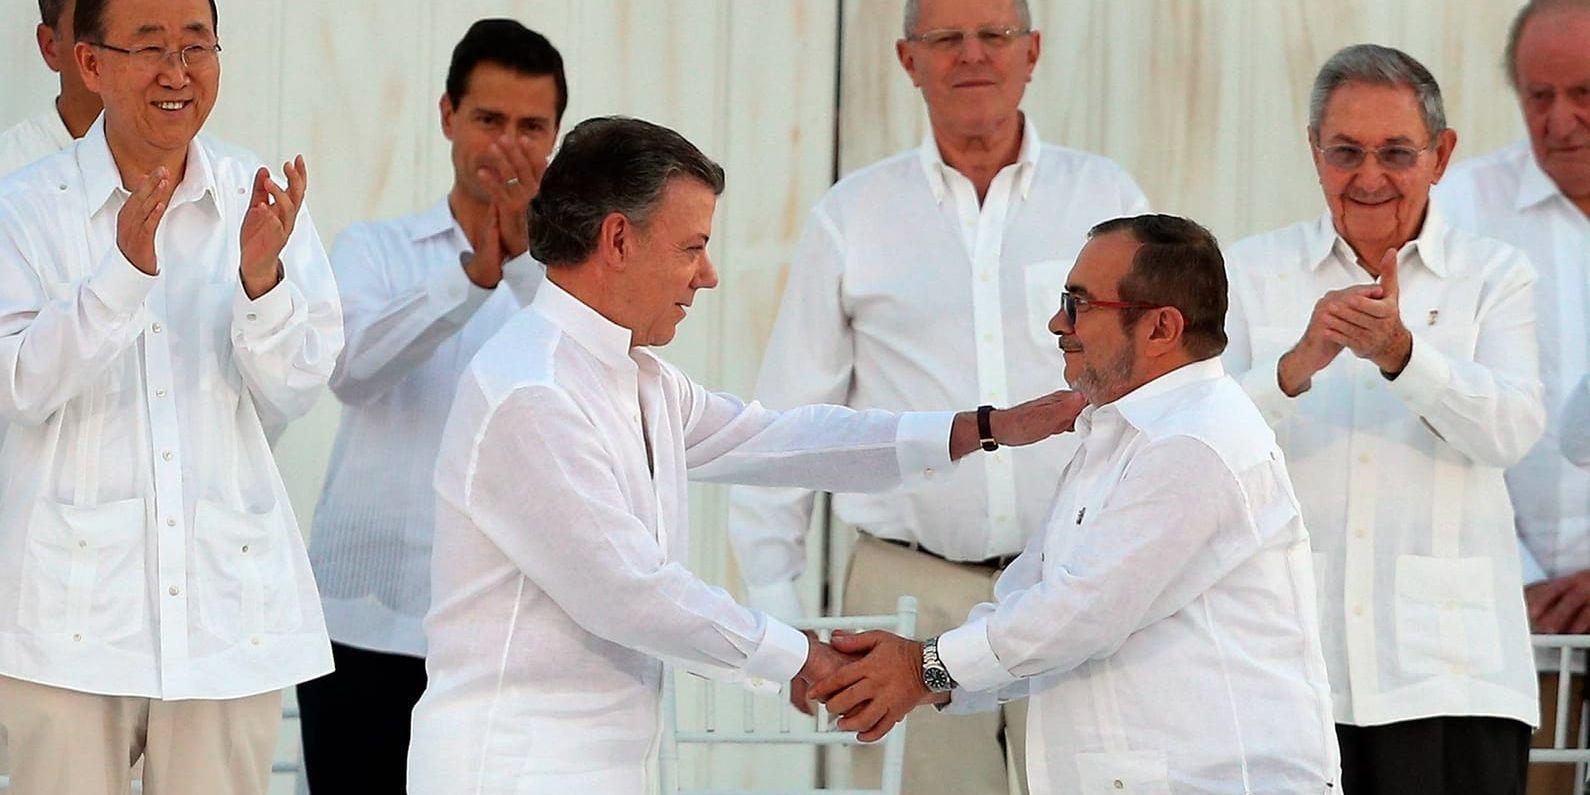 Colombias president Juan Manuel Santos och Farc-ledaren Timoléon Jiménez skakar hand under ceremonin i Cartagena.